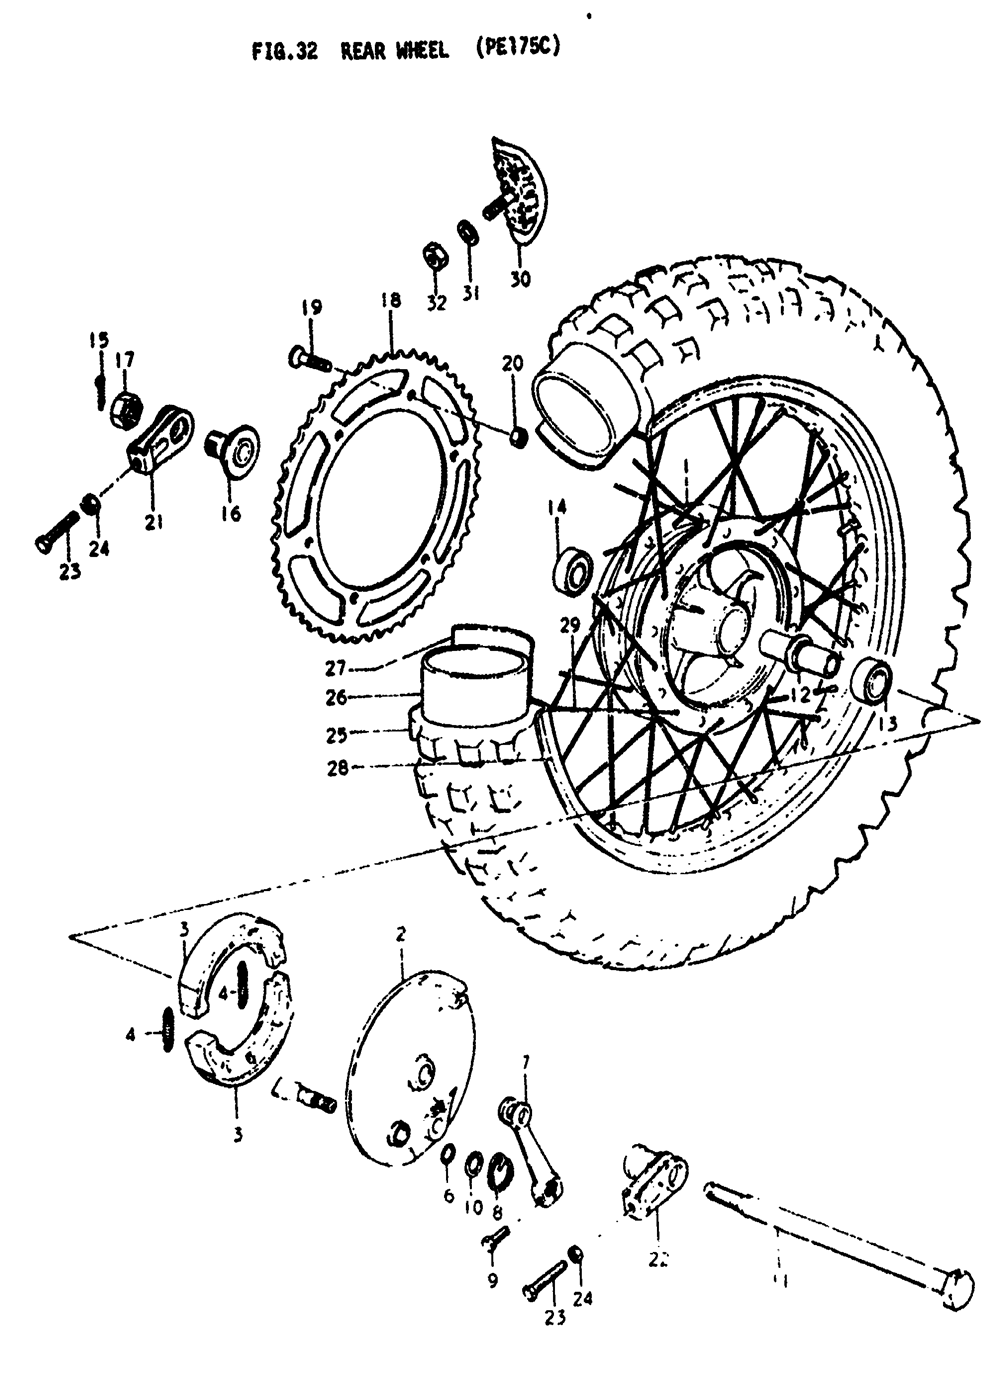 Rear wheel (pe175c)